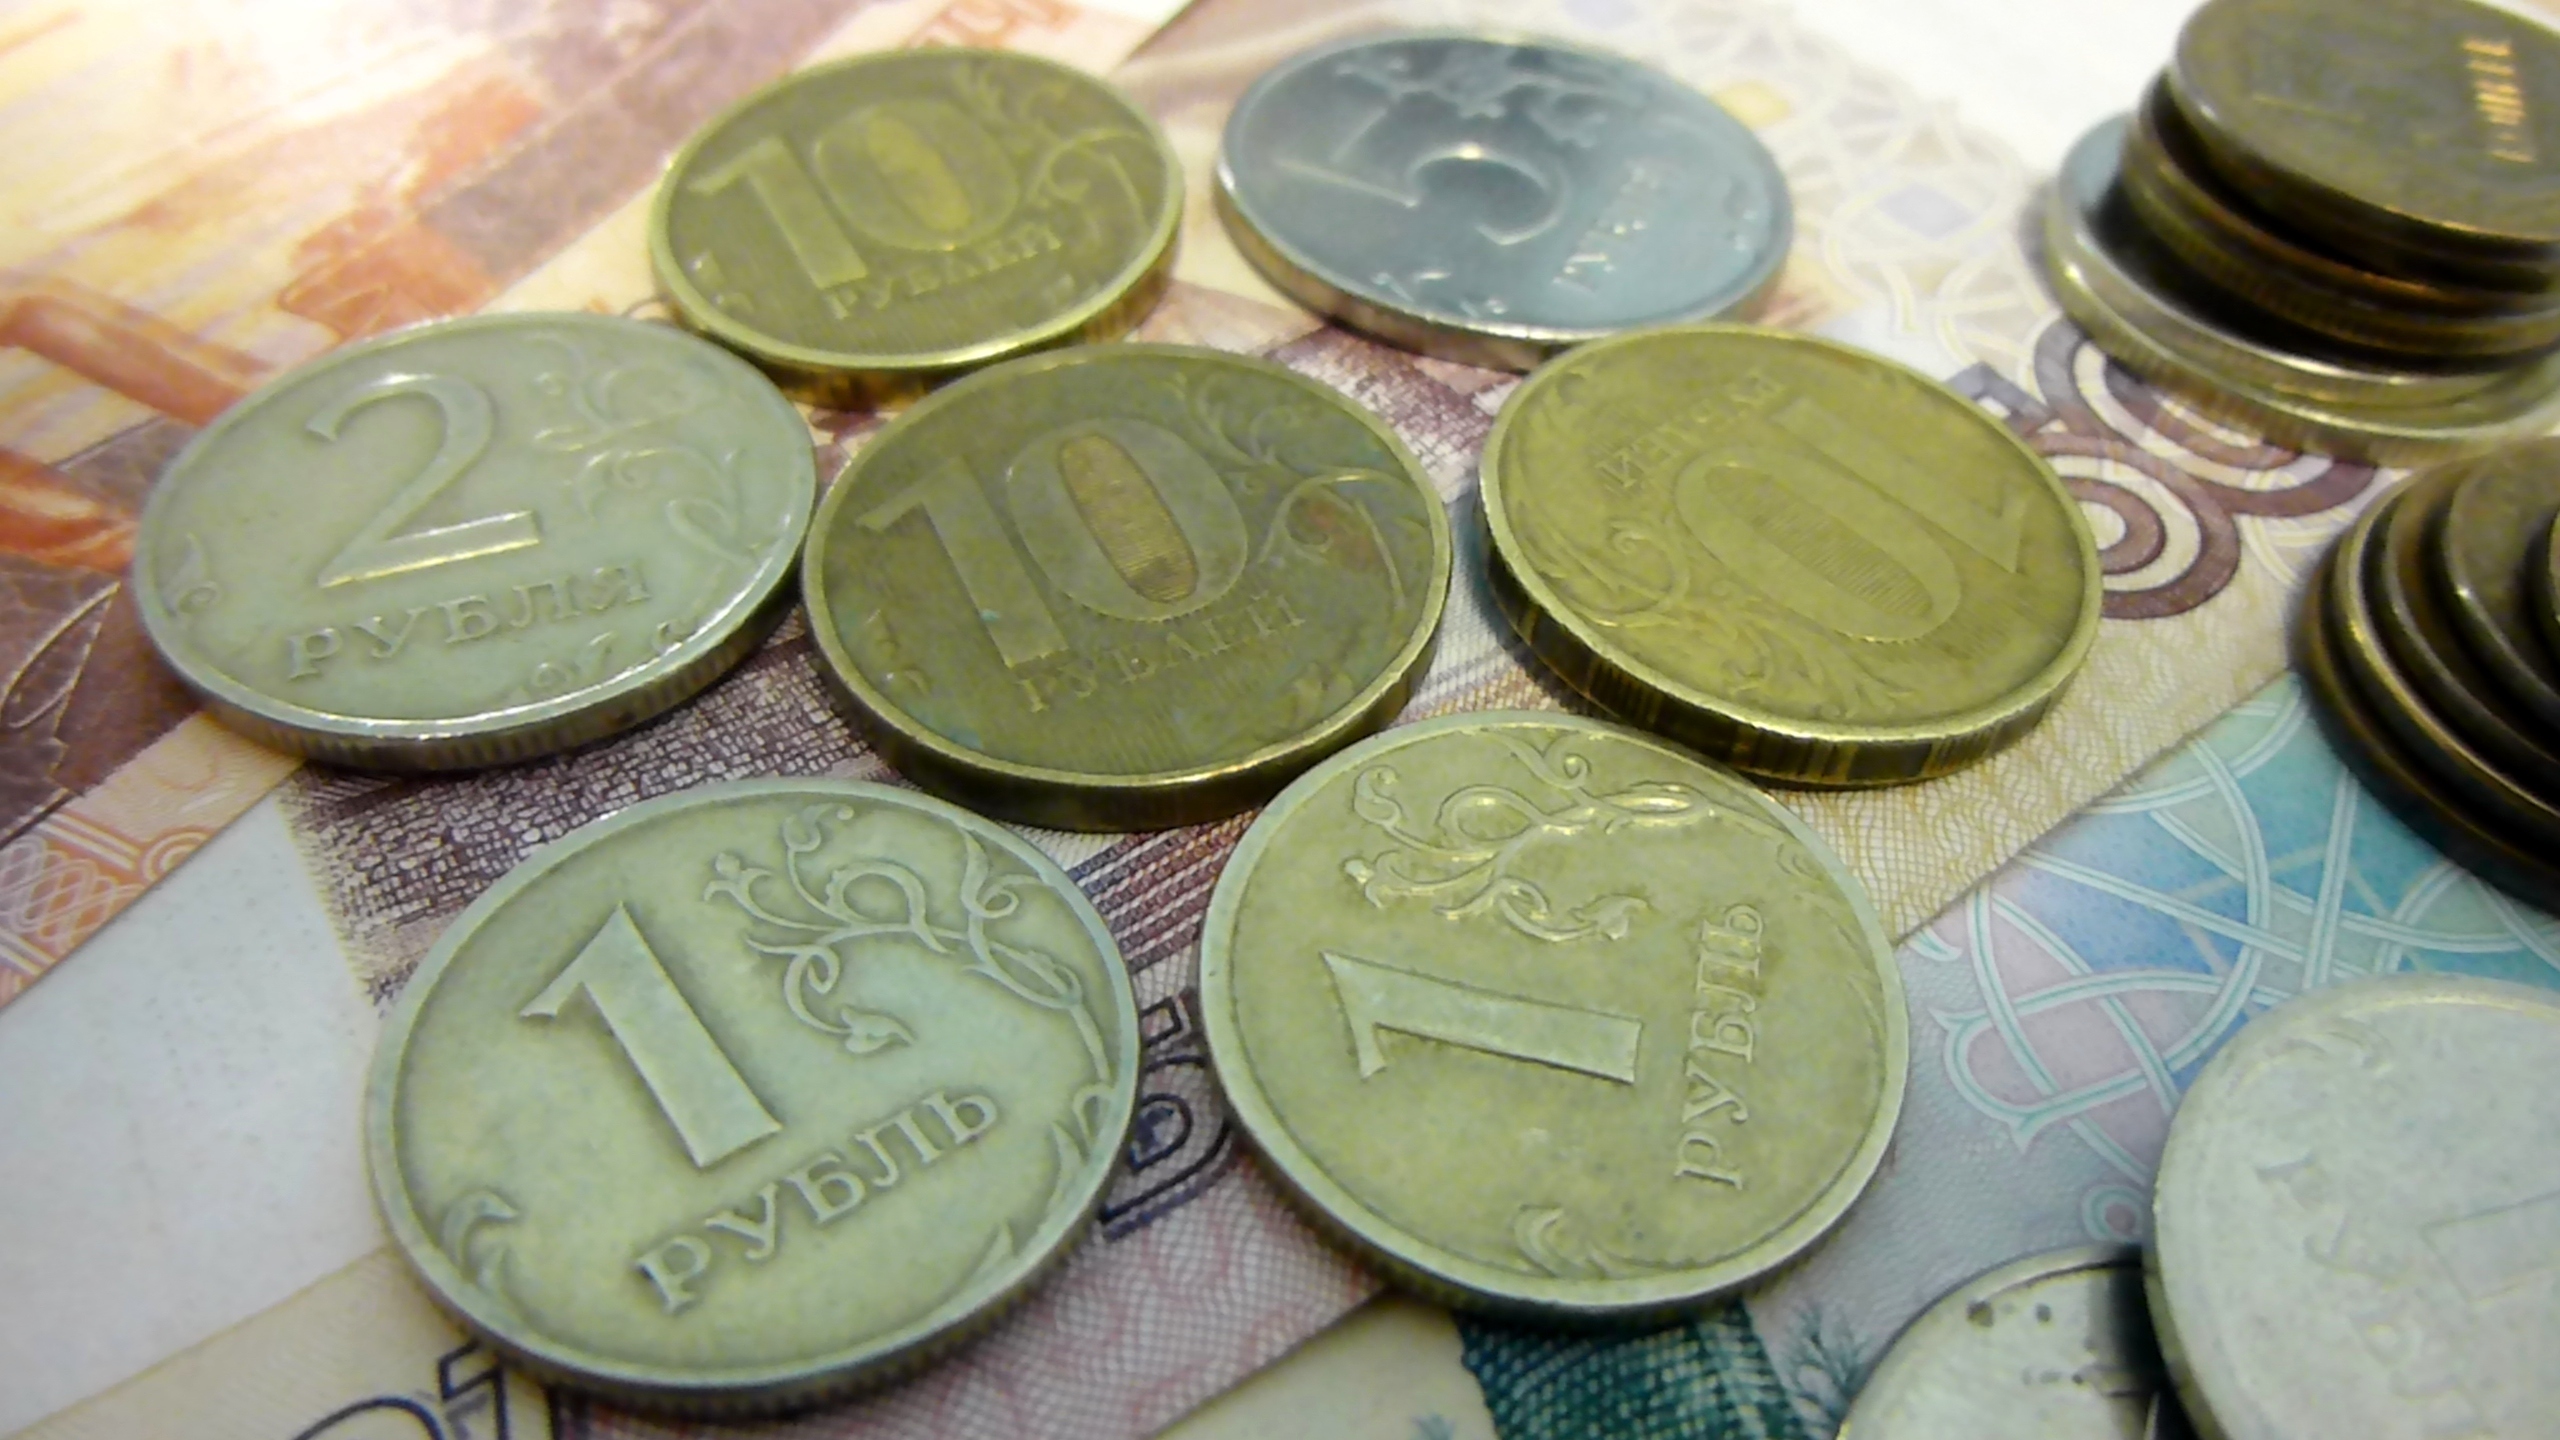 Доплата от накопительной части пенсии составит около 1,3 тыс рублей